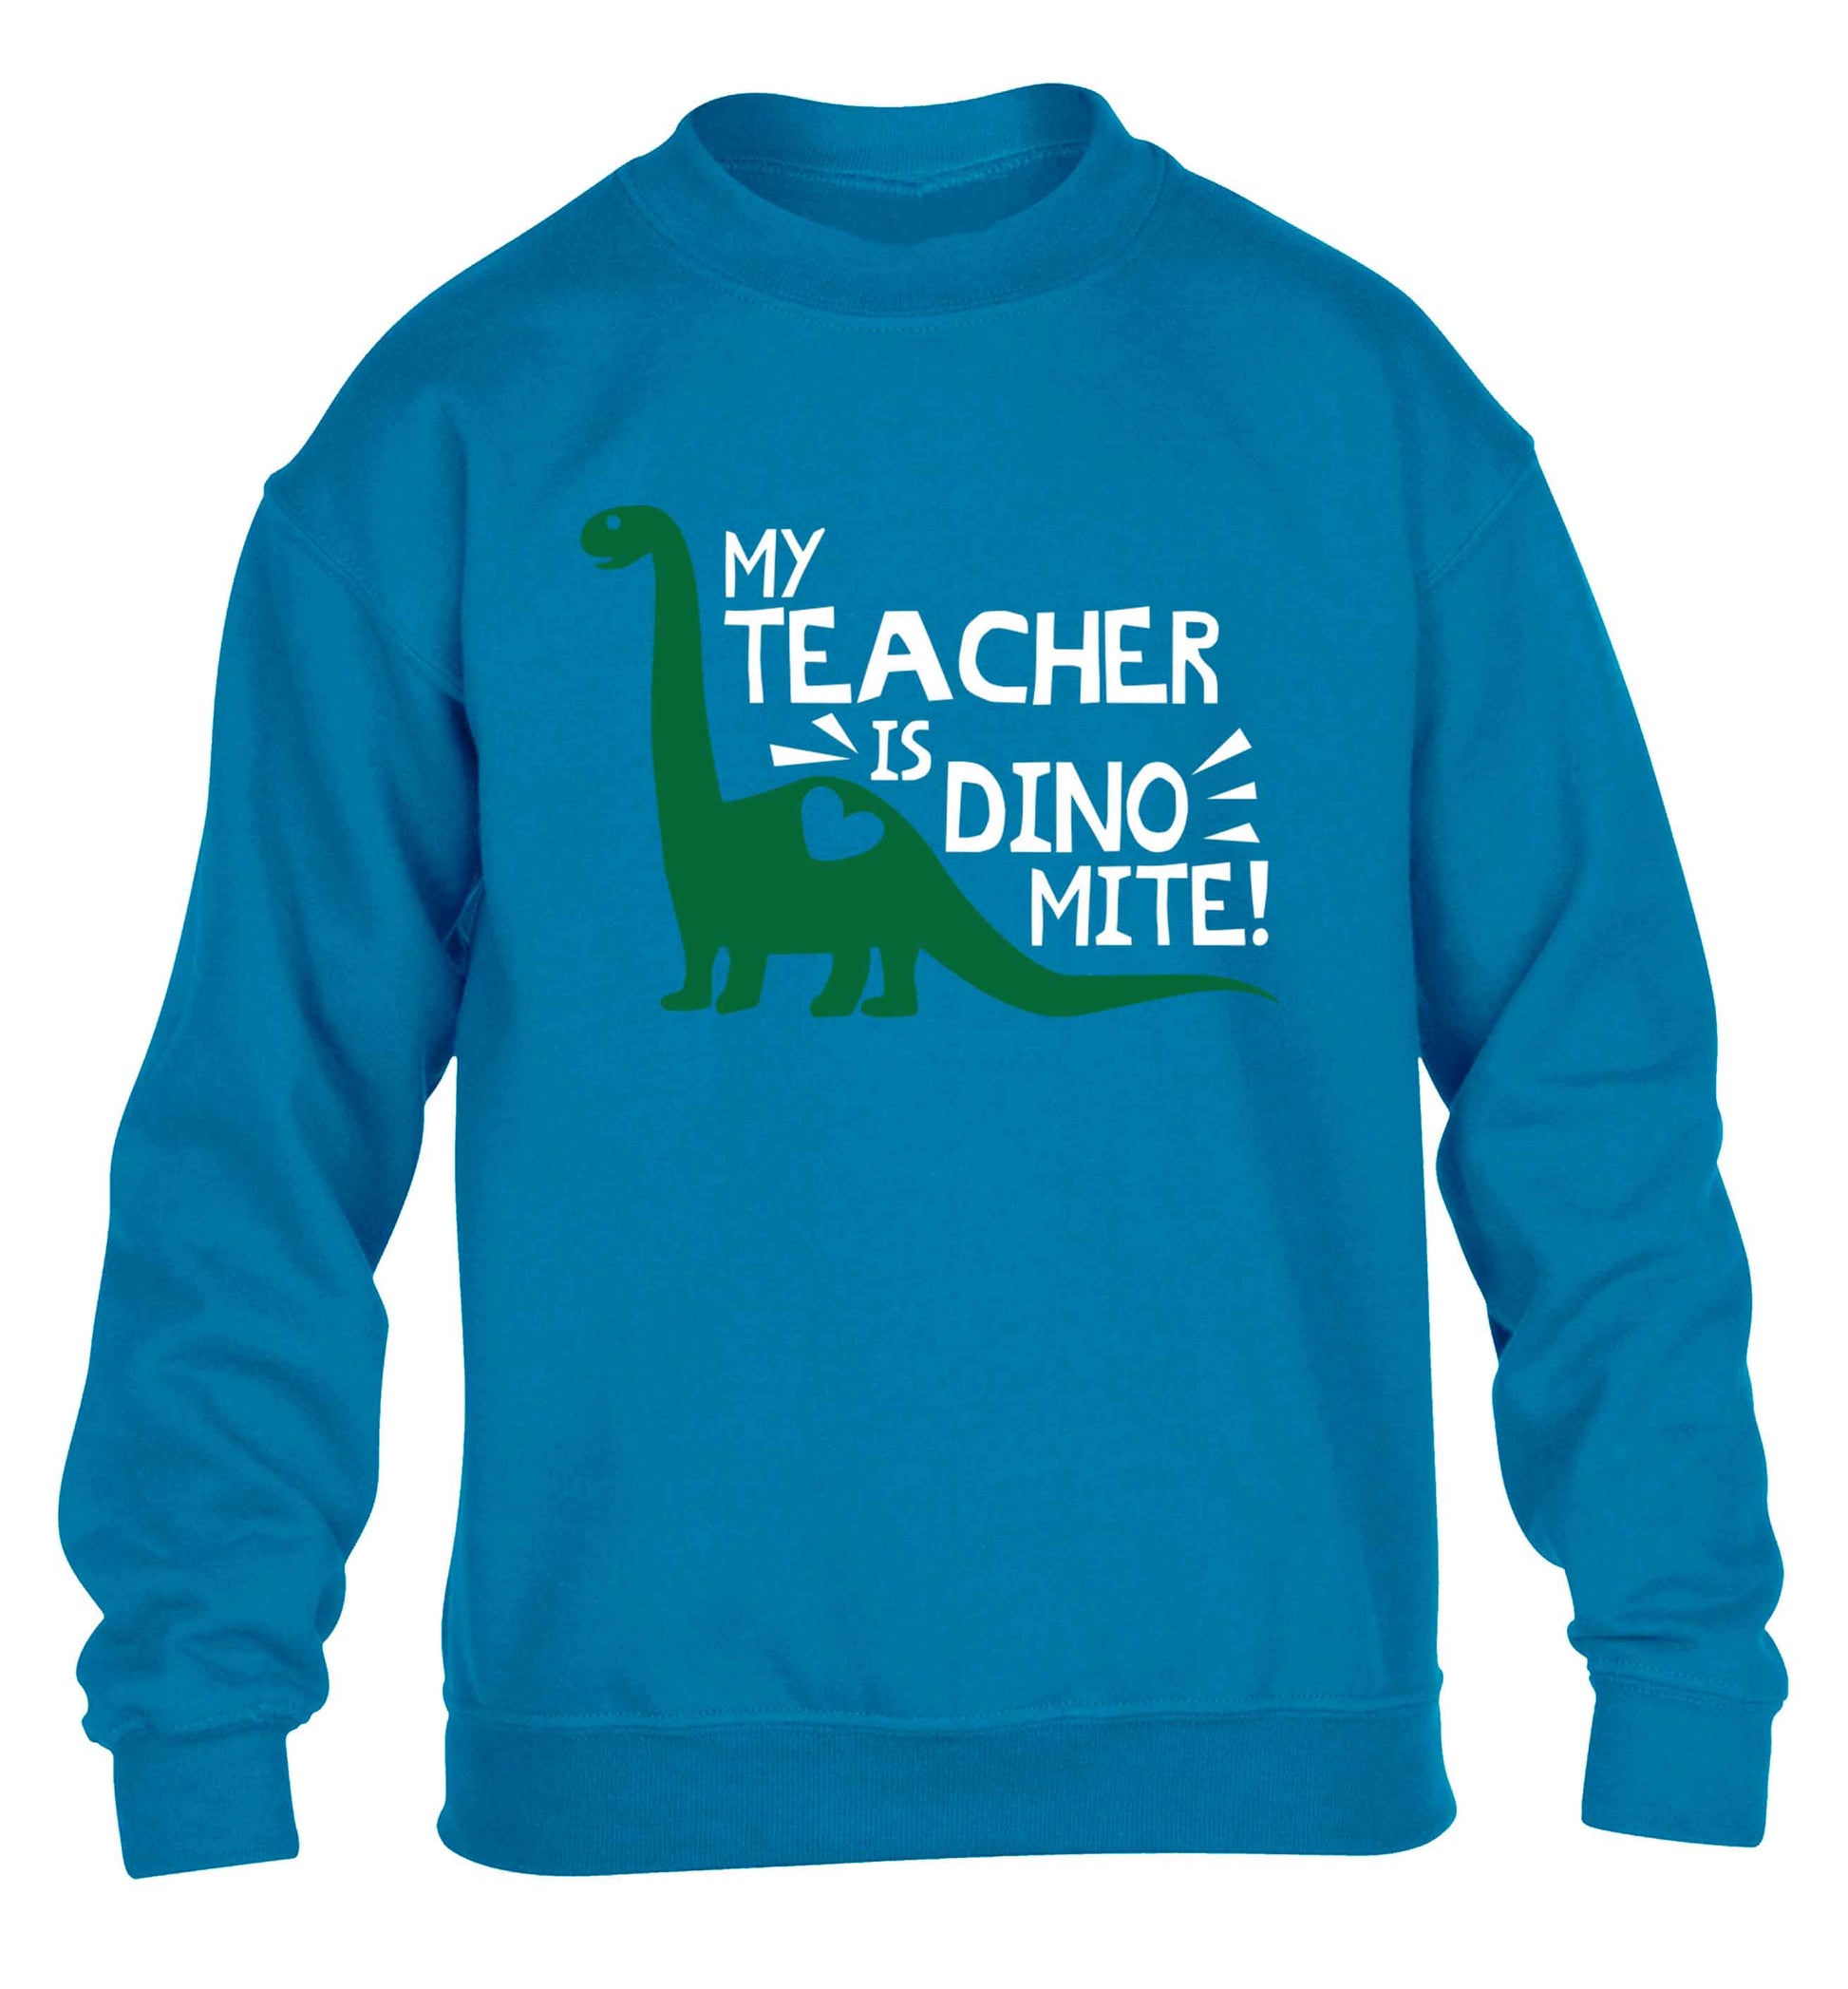 My teacher is dinomite! children's blue sweater 12-13 Years